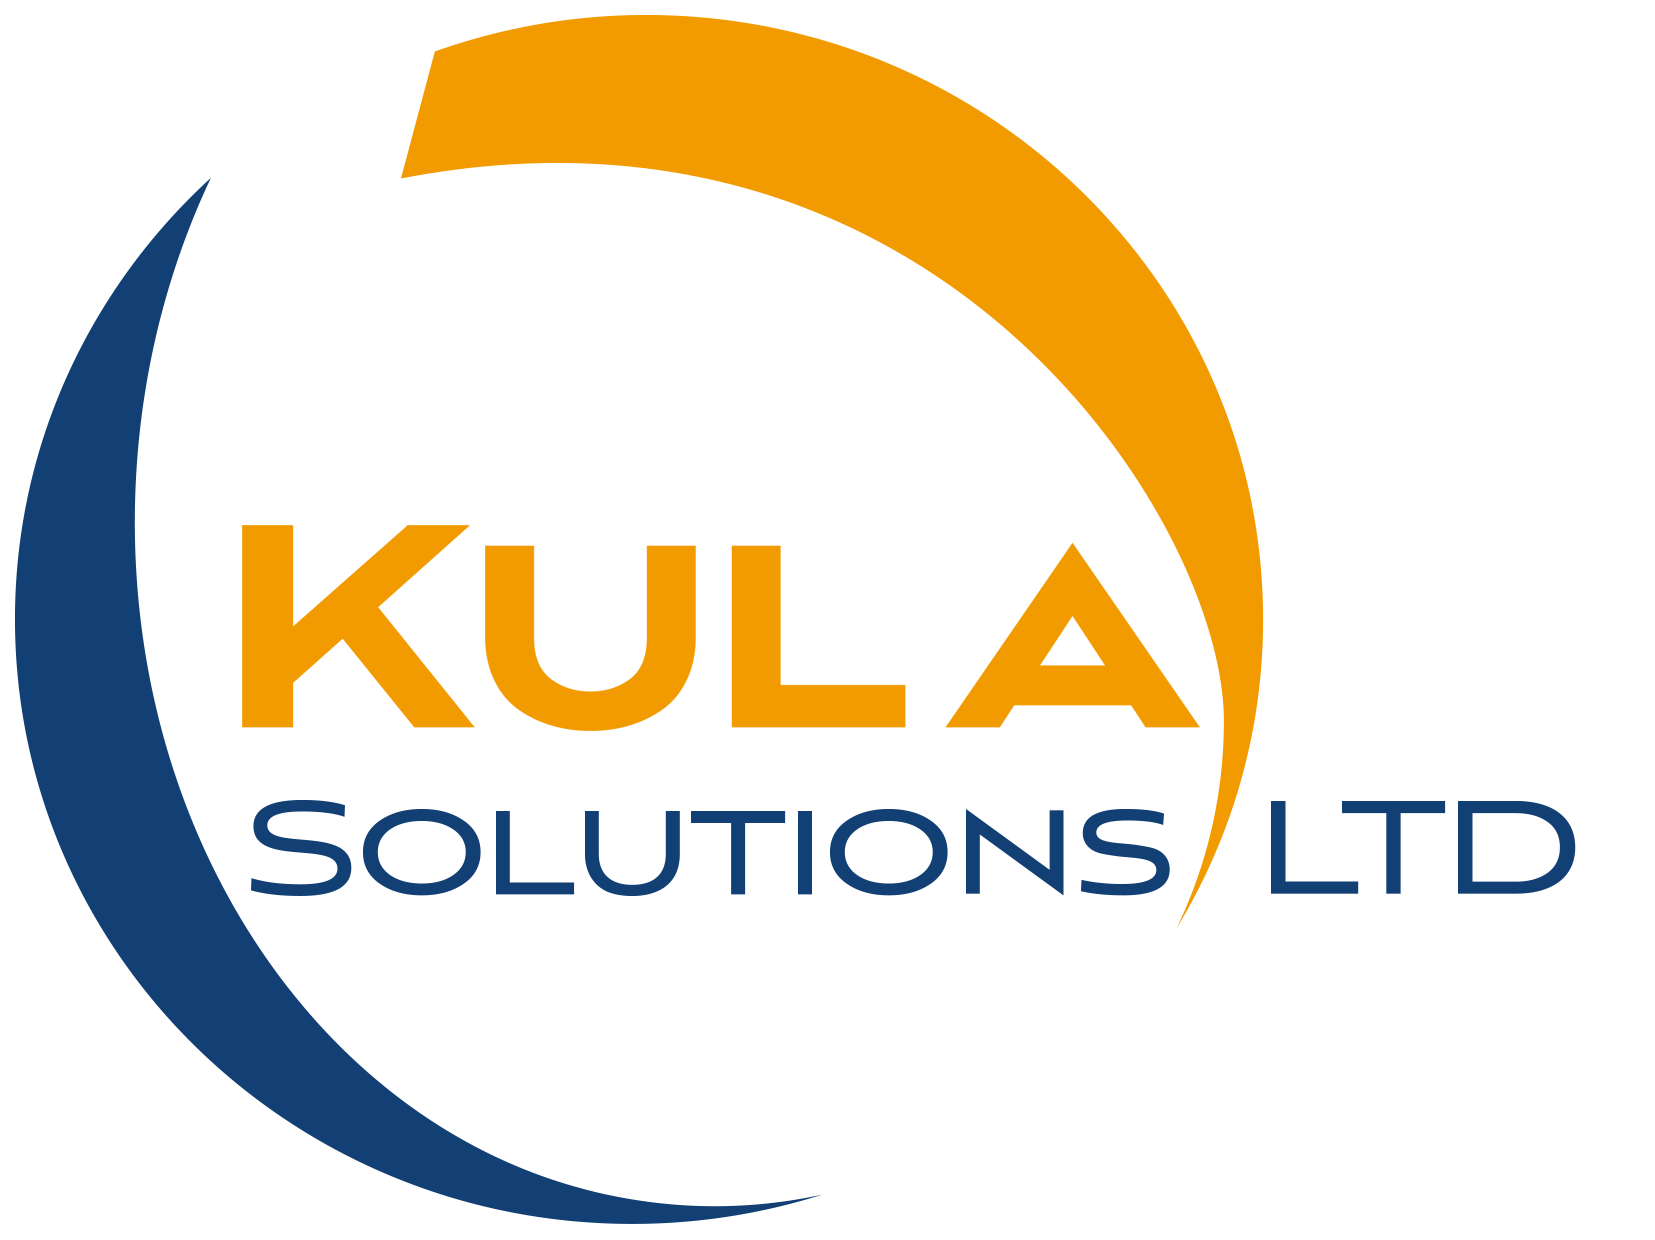 Kula Solutions LTD